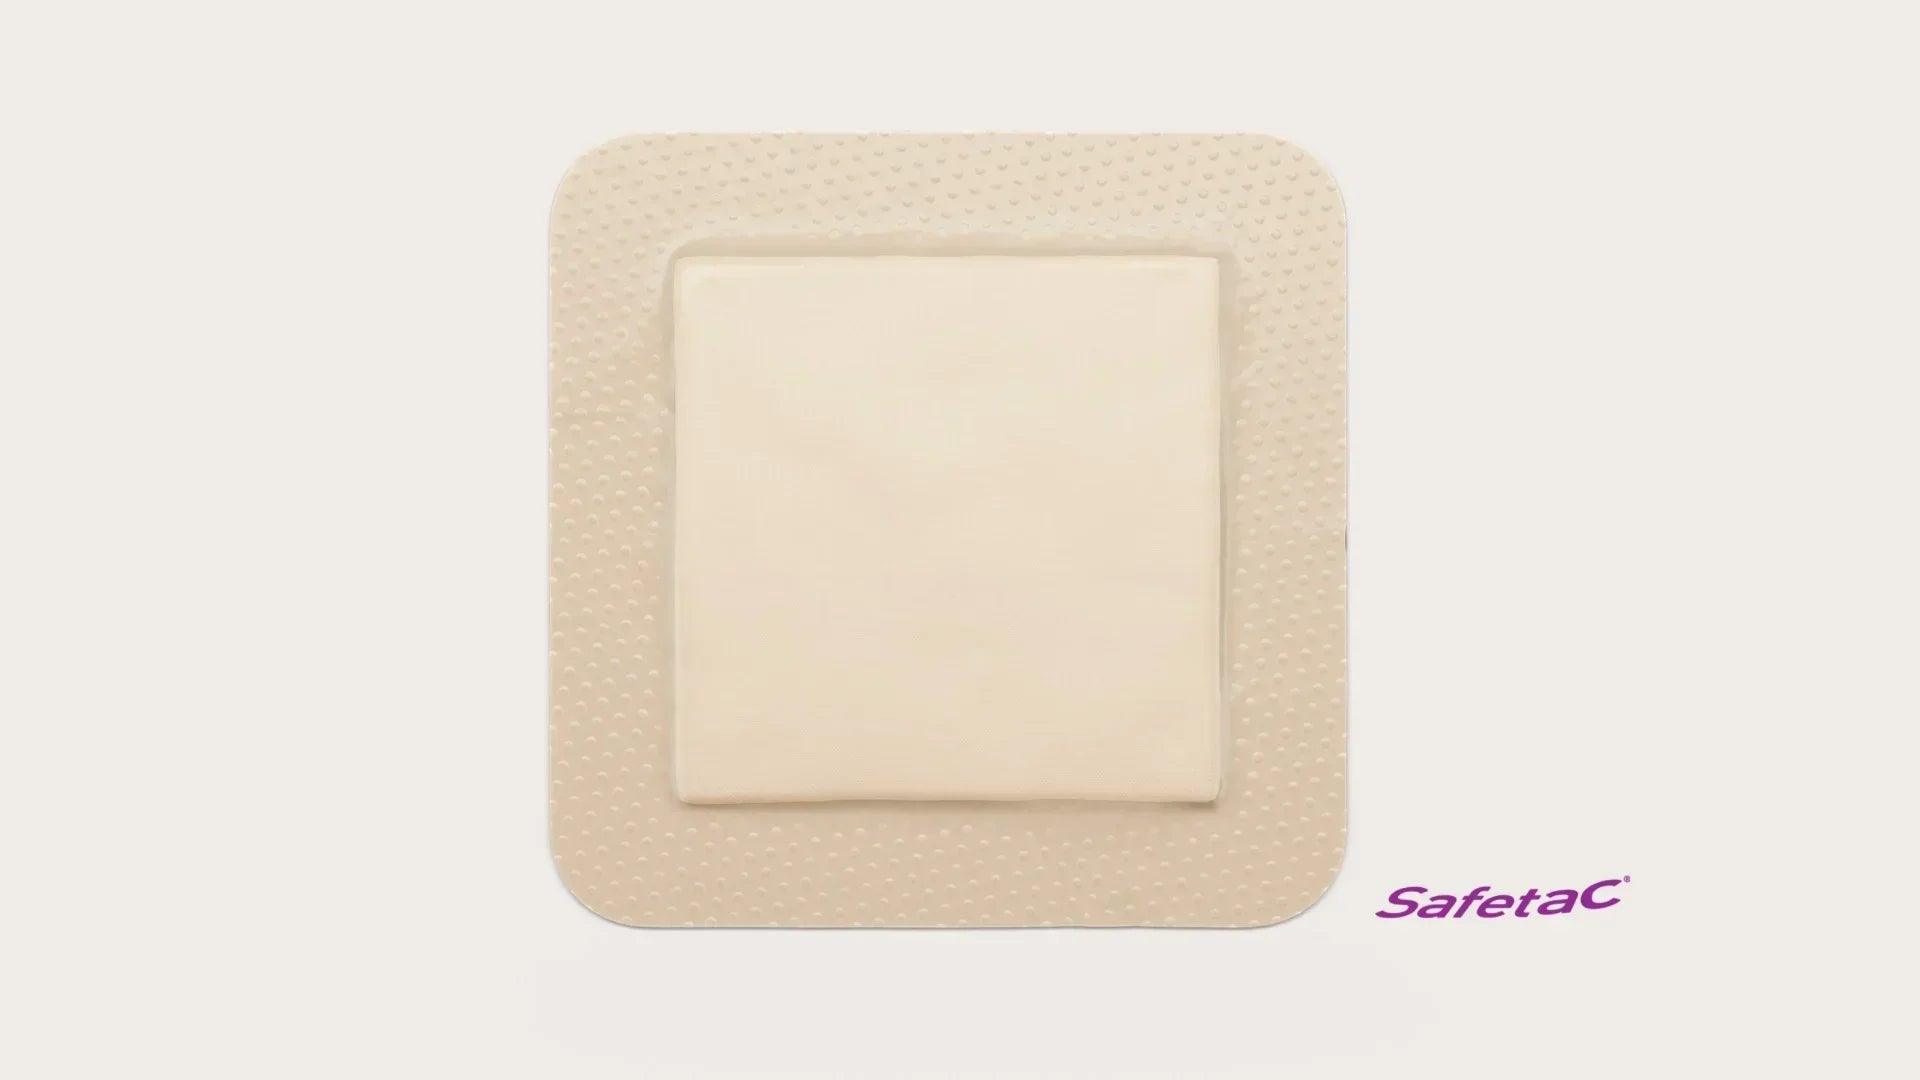 Mepilex Border Self-Adherent Soft Silicone Foam Dressing by Molnlycke